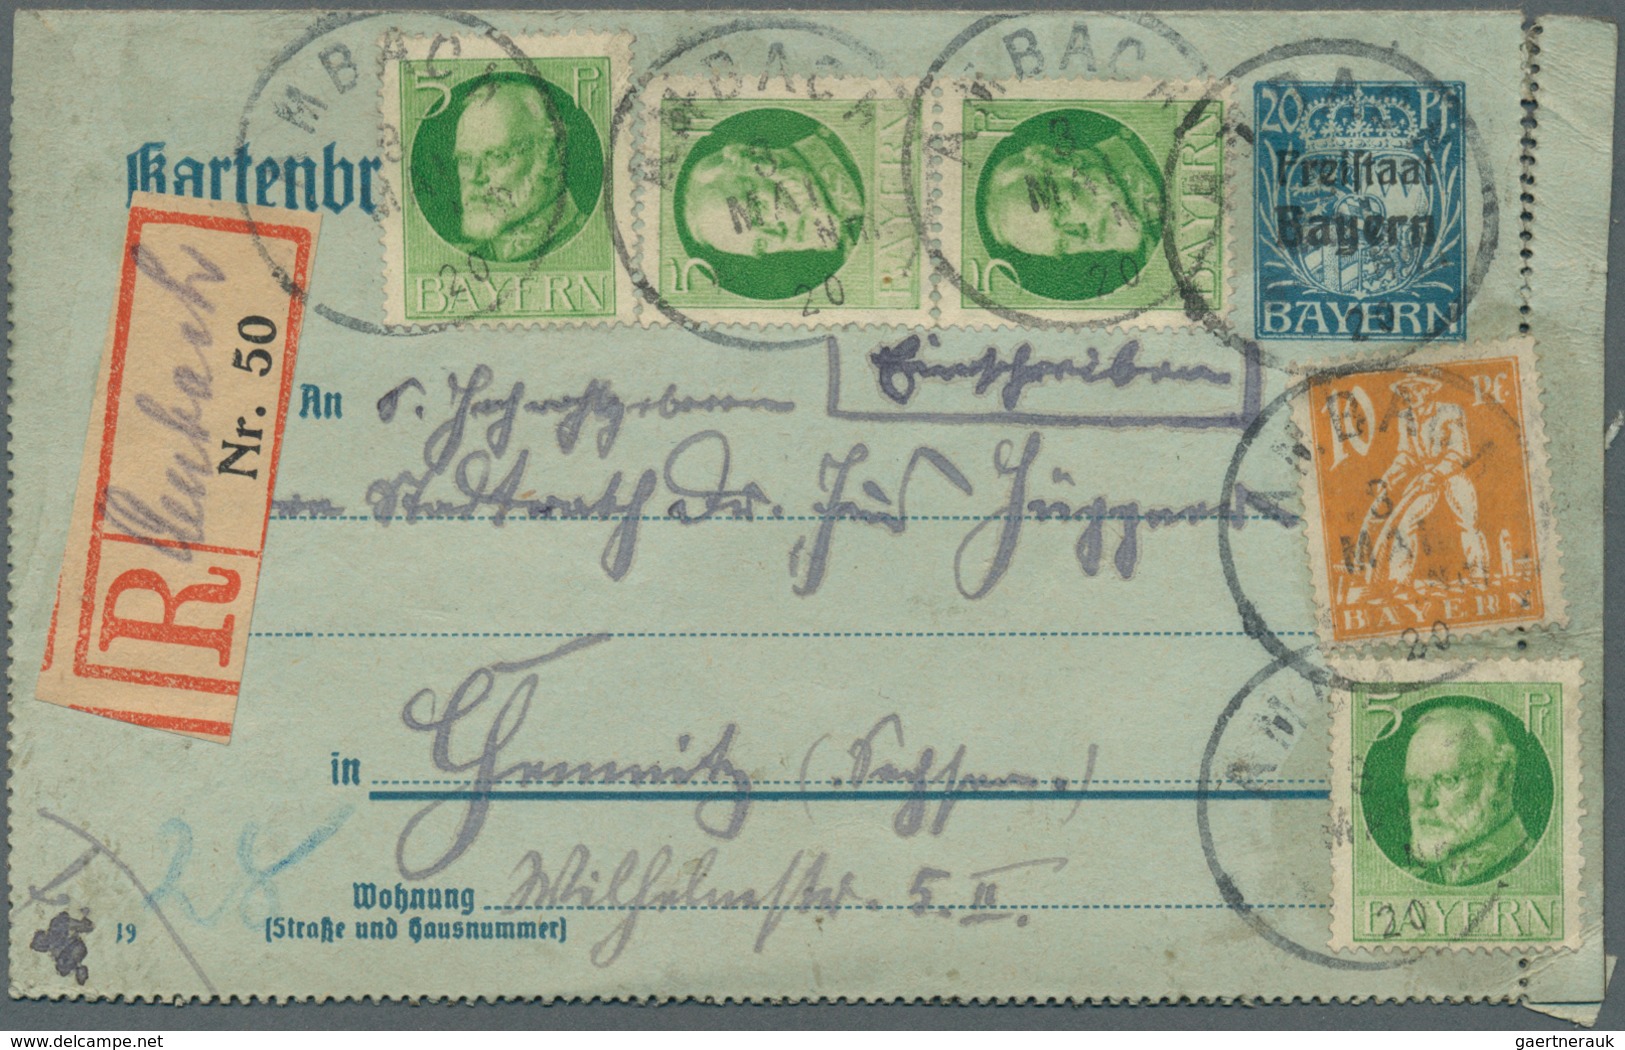 31206 Bayern - Marken und Briefe: 1887/1920, Partie von 37 Briefen, Karten und gebrauchten Ganzsachen, dab